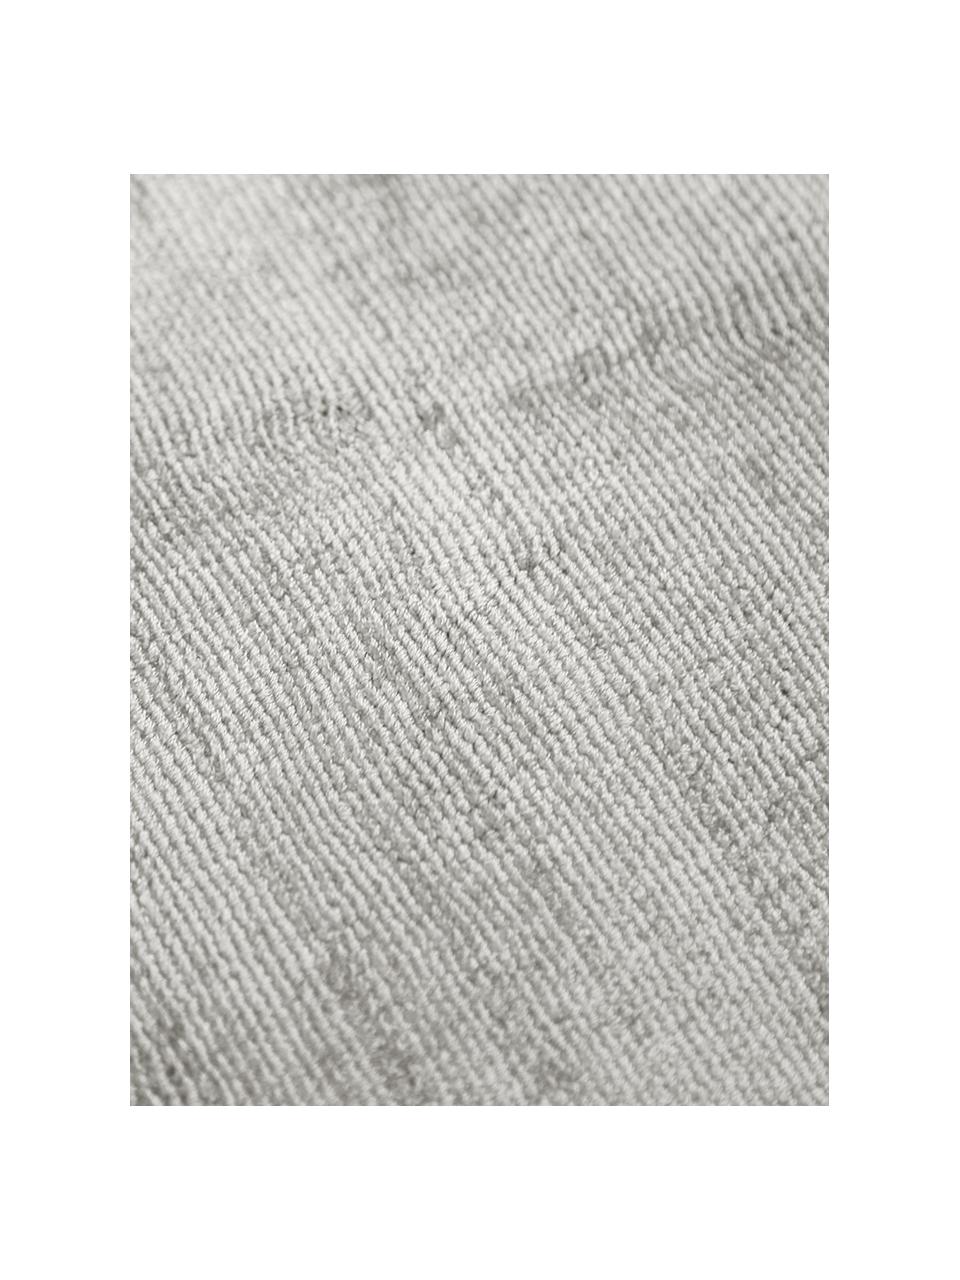 Tapis gris beige viscose tissé main Jane, Gris clair - beige, larg. 120 x long. 180 cm (taille S)